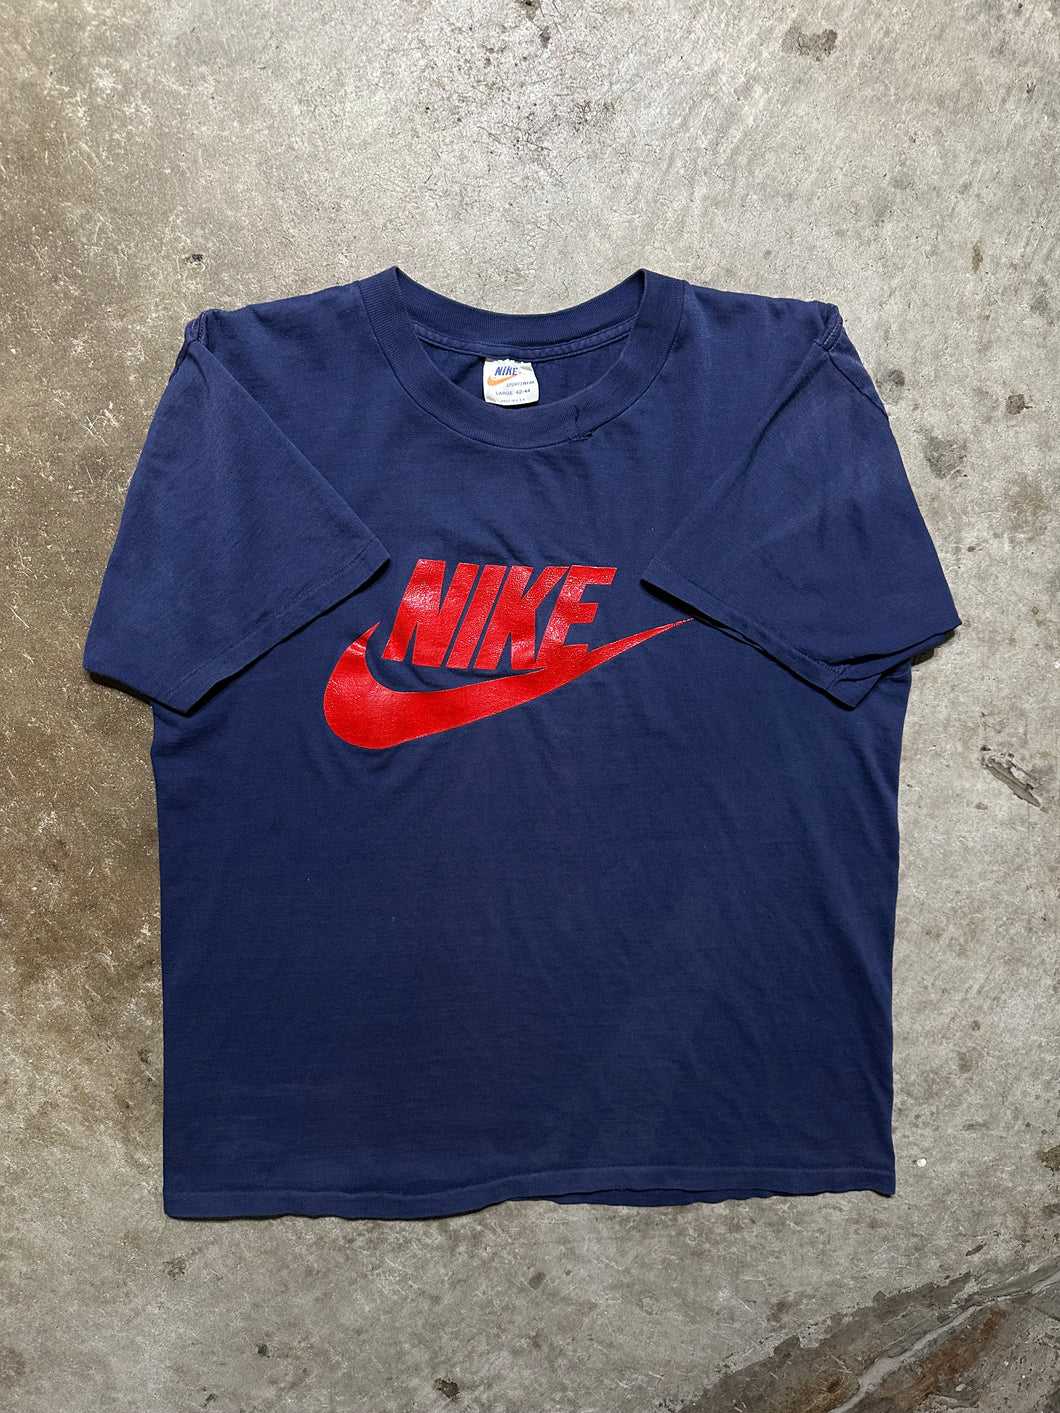 Vintage 1970’s Nike Logo Tee (Medium)